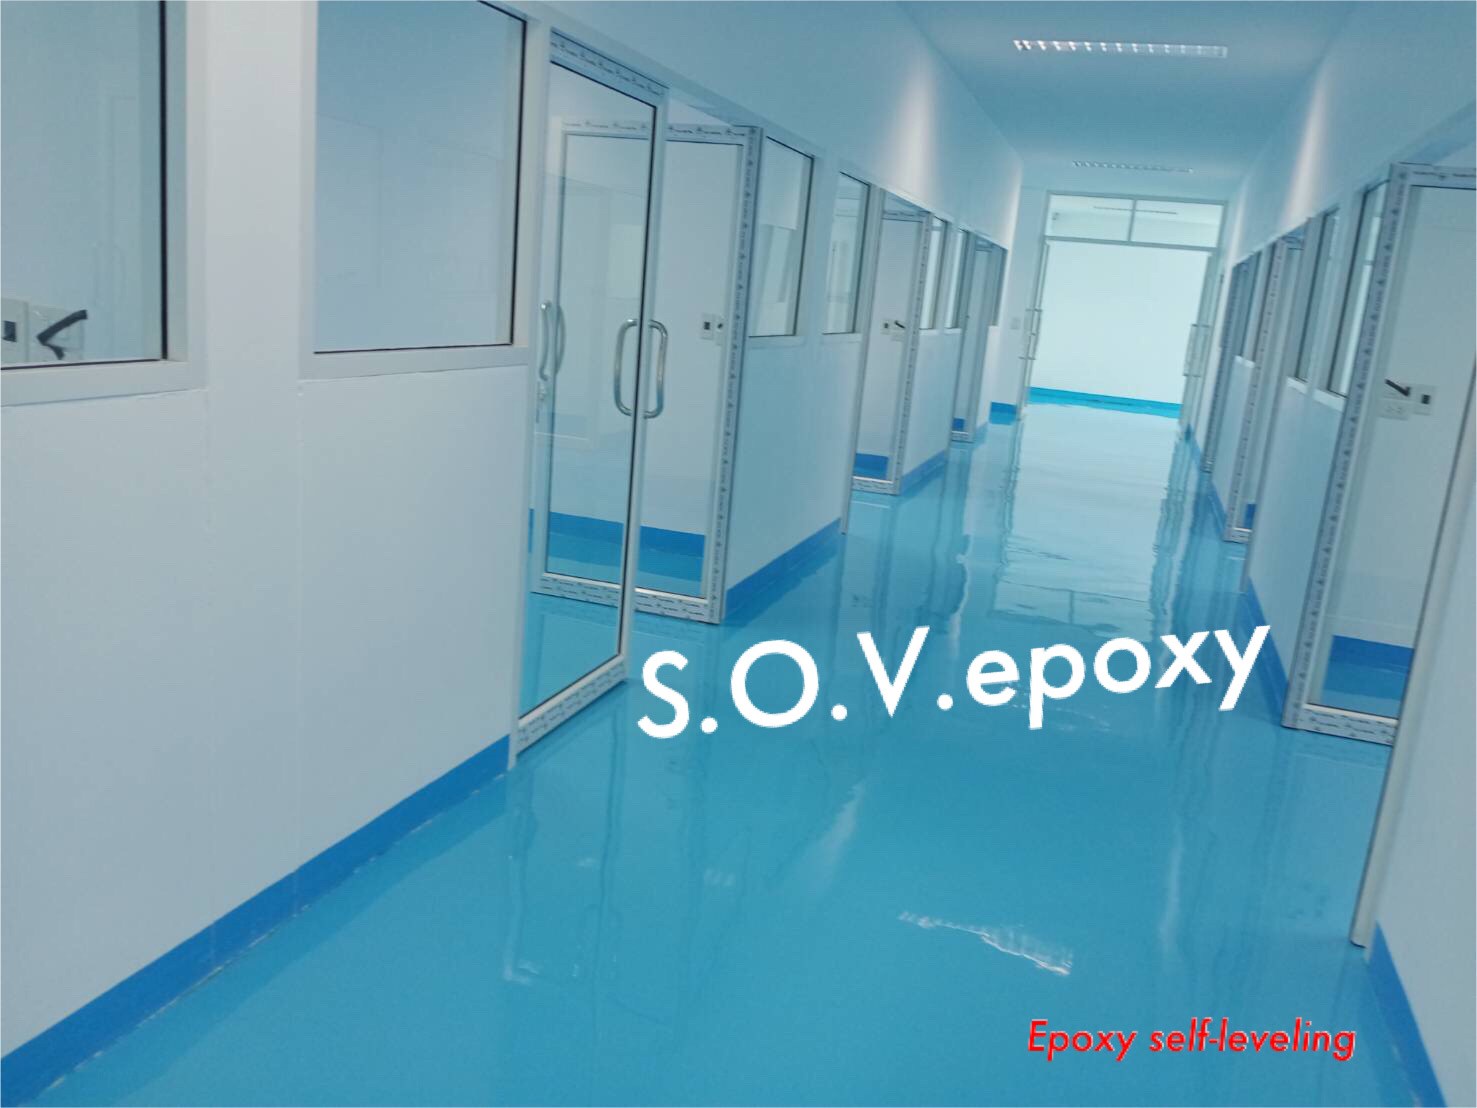 Sov Epoxy ทำพื้นอีพ็อกซี่ พื้นพียู พื้นโรงงาน พื้นสนามกีฬา CH 8